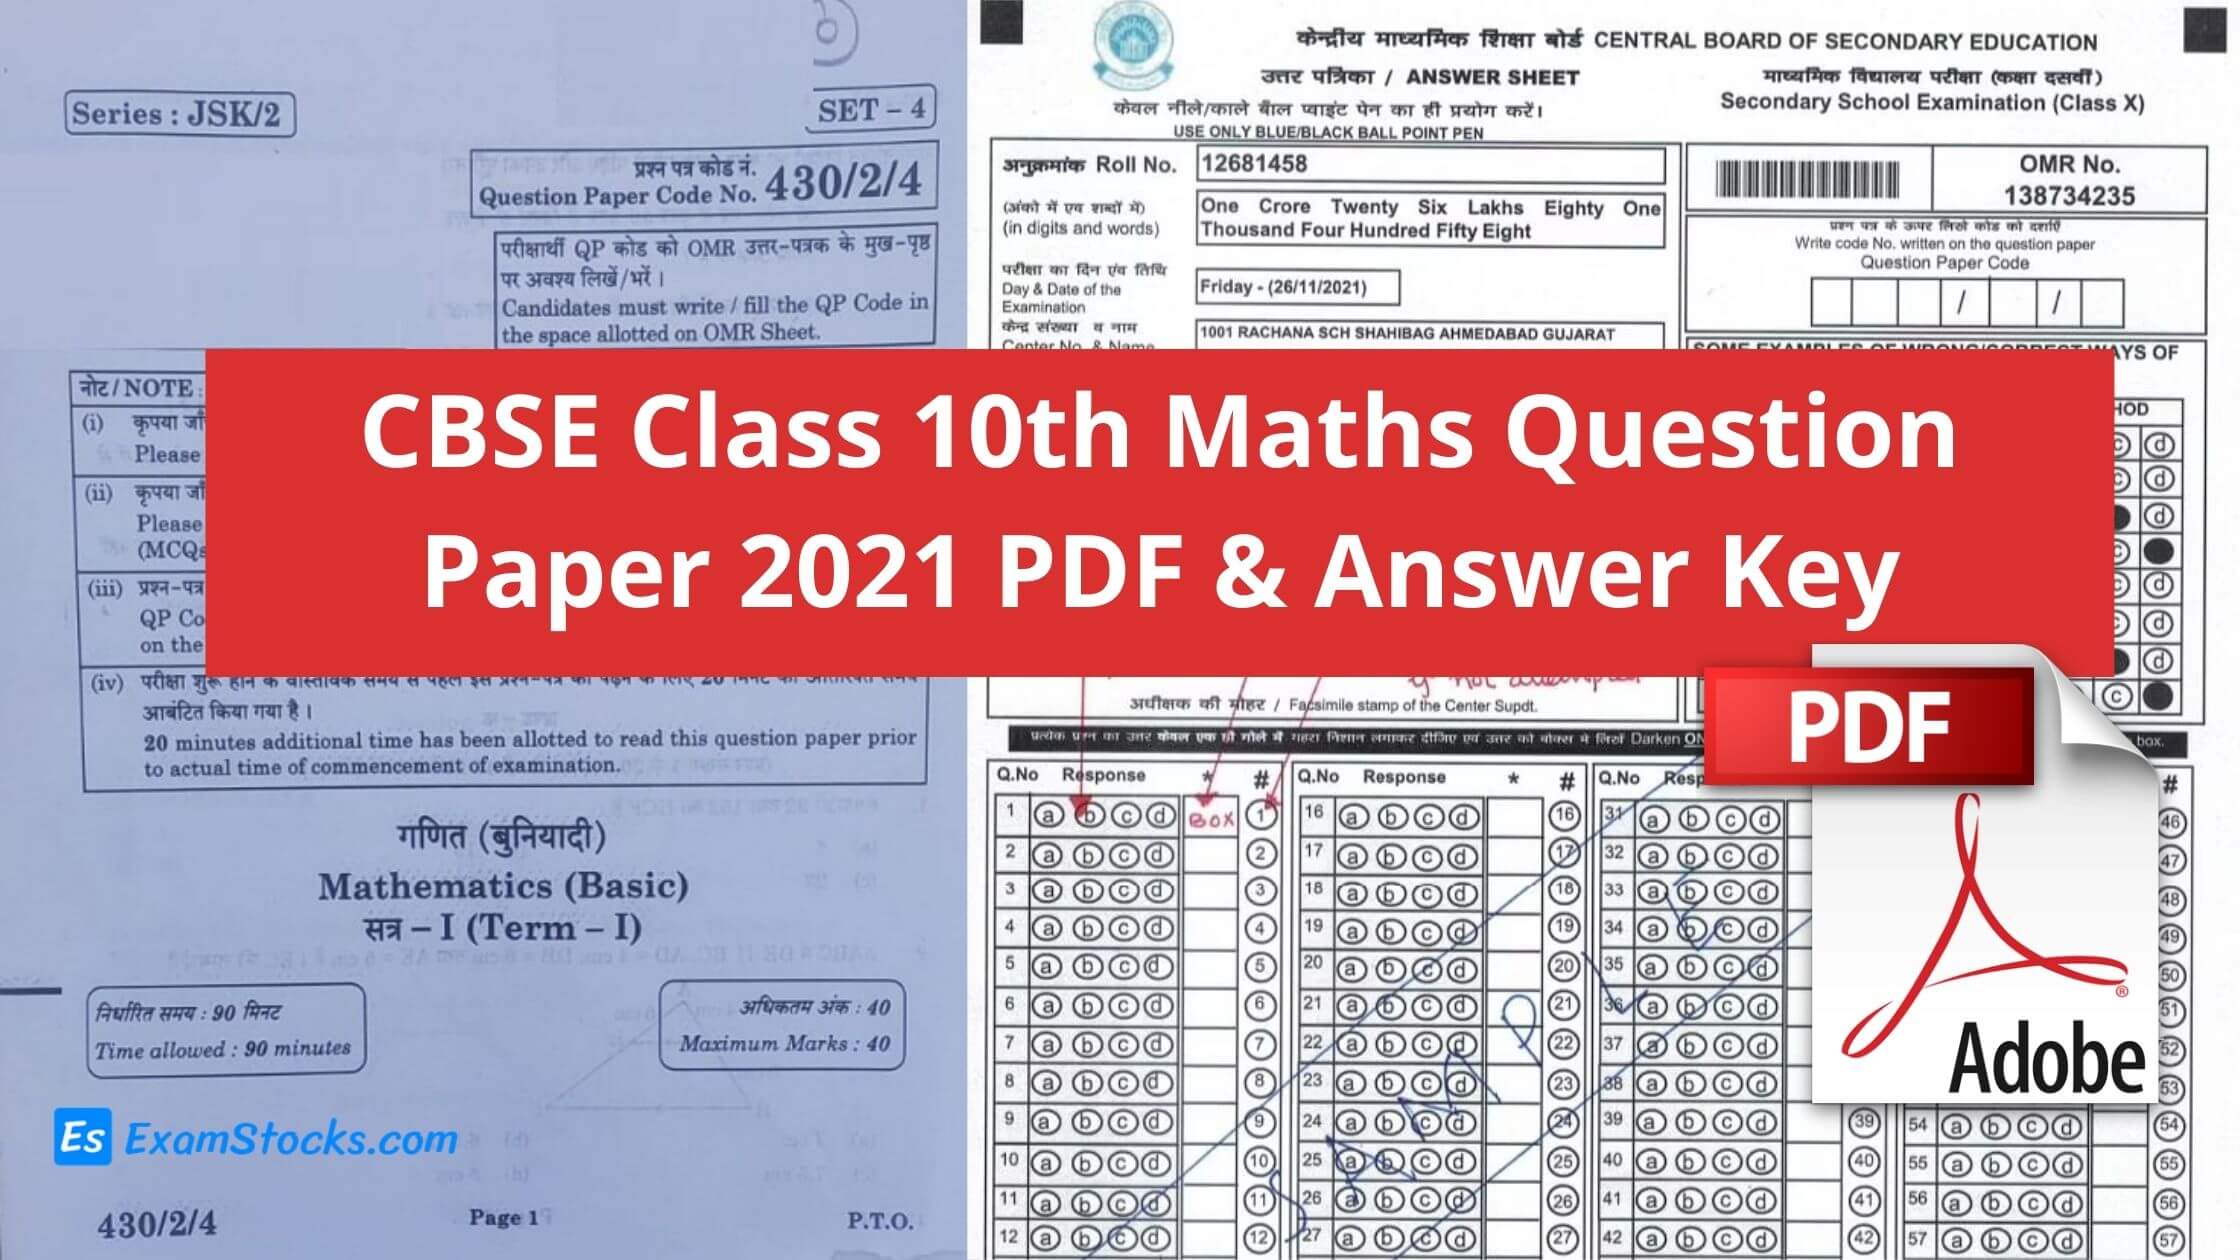 CBSE Class 10th Maths Question Paper 2021 PDF